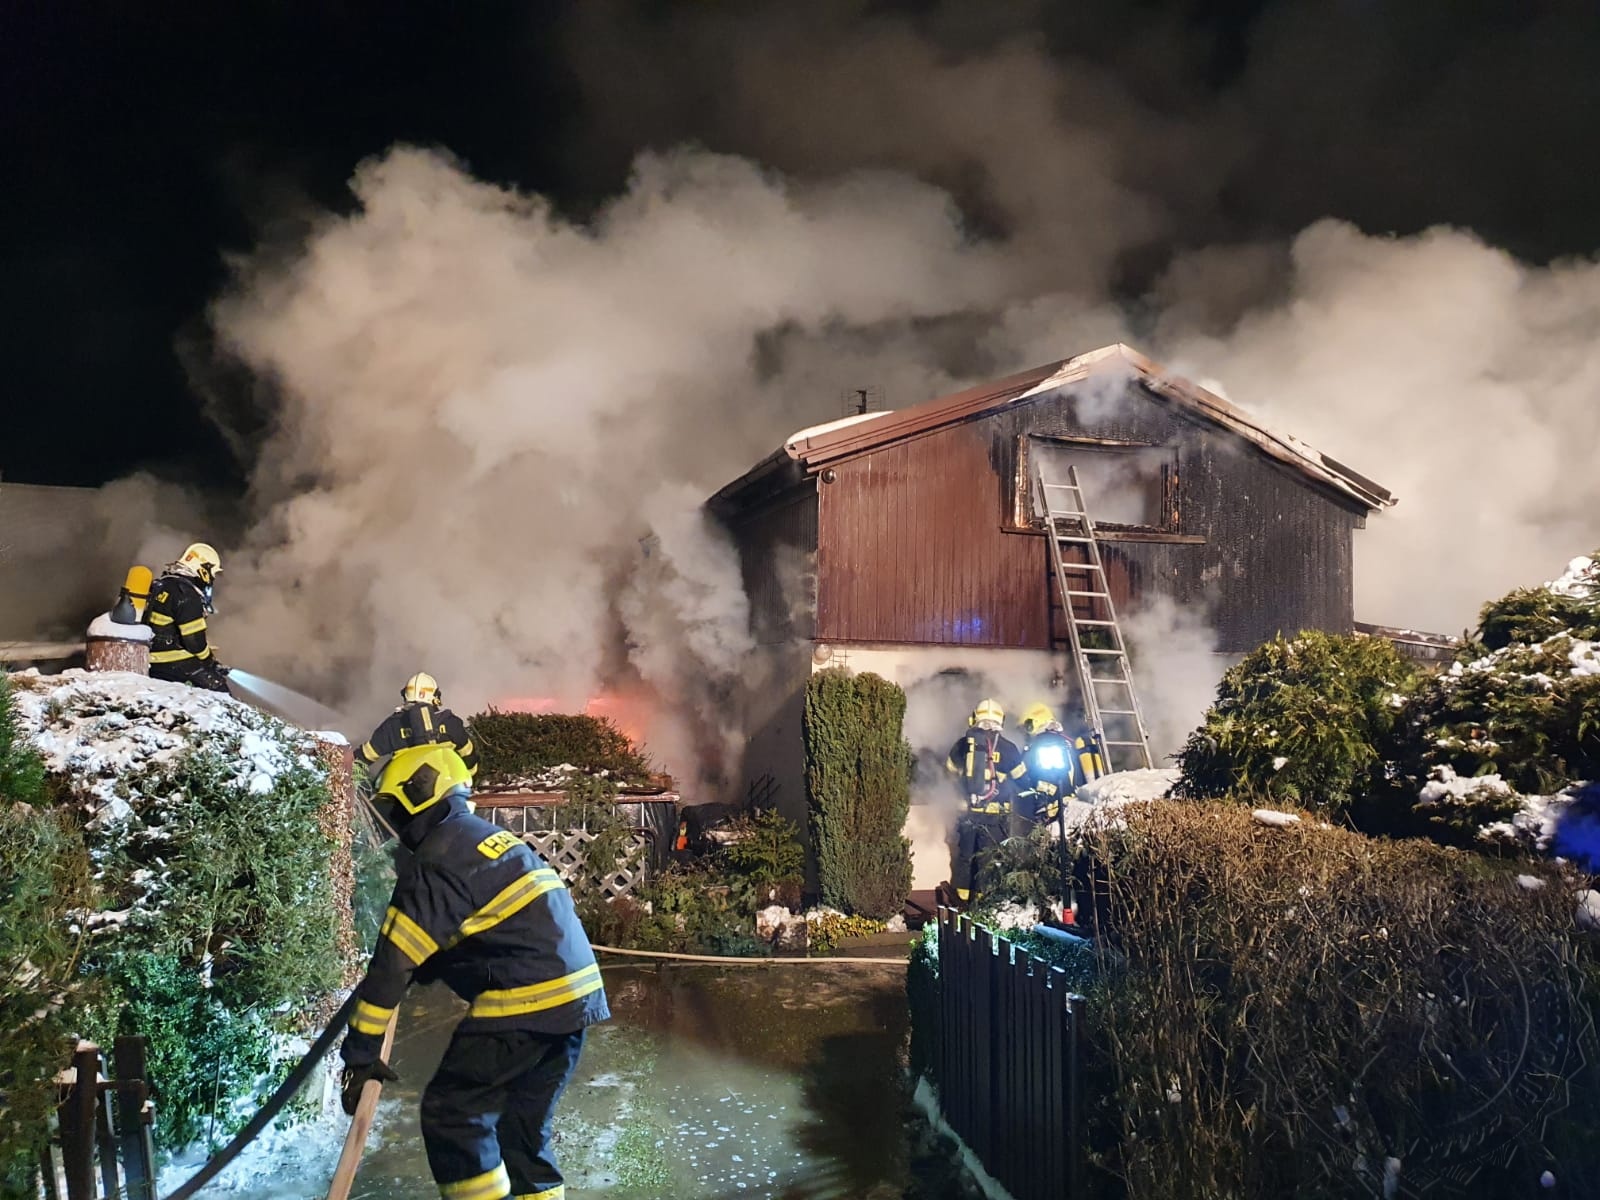 PAK_likvidaci požáru chaty v Třemošnici komplikoval mráz_hasiči bojují nejen s ohněm ale i s komplikovanými podmínkami.jpg